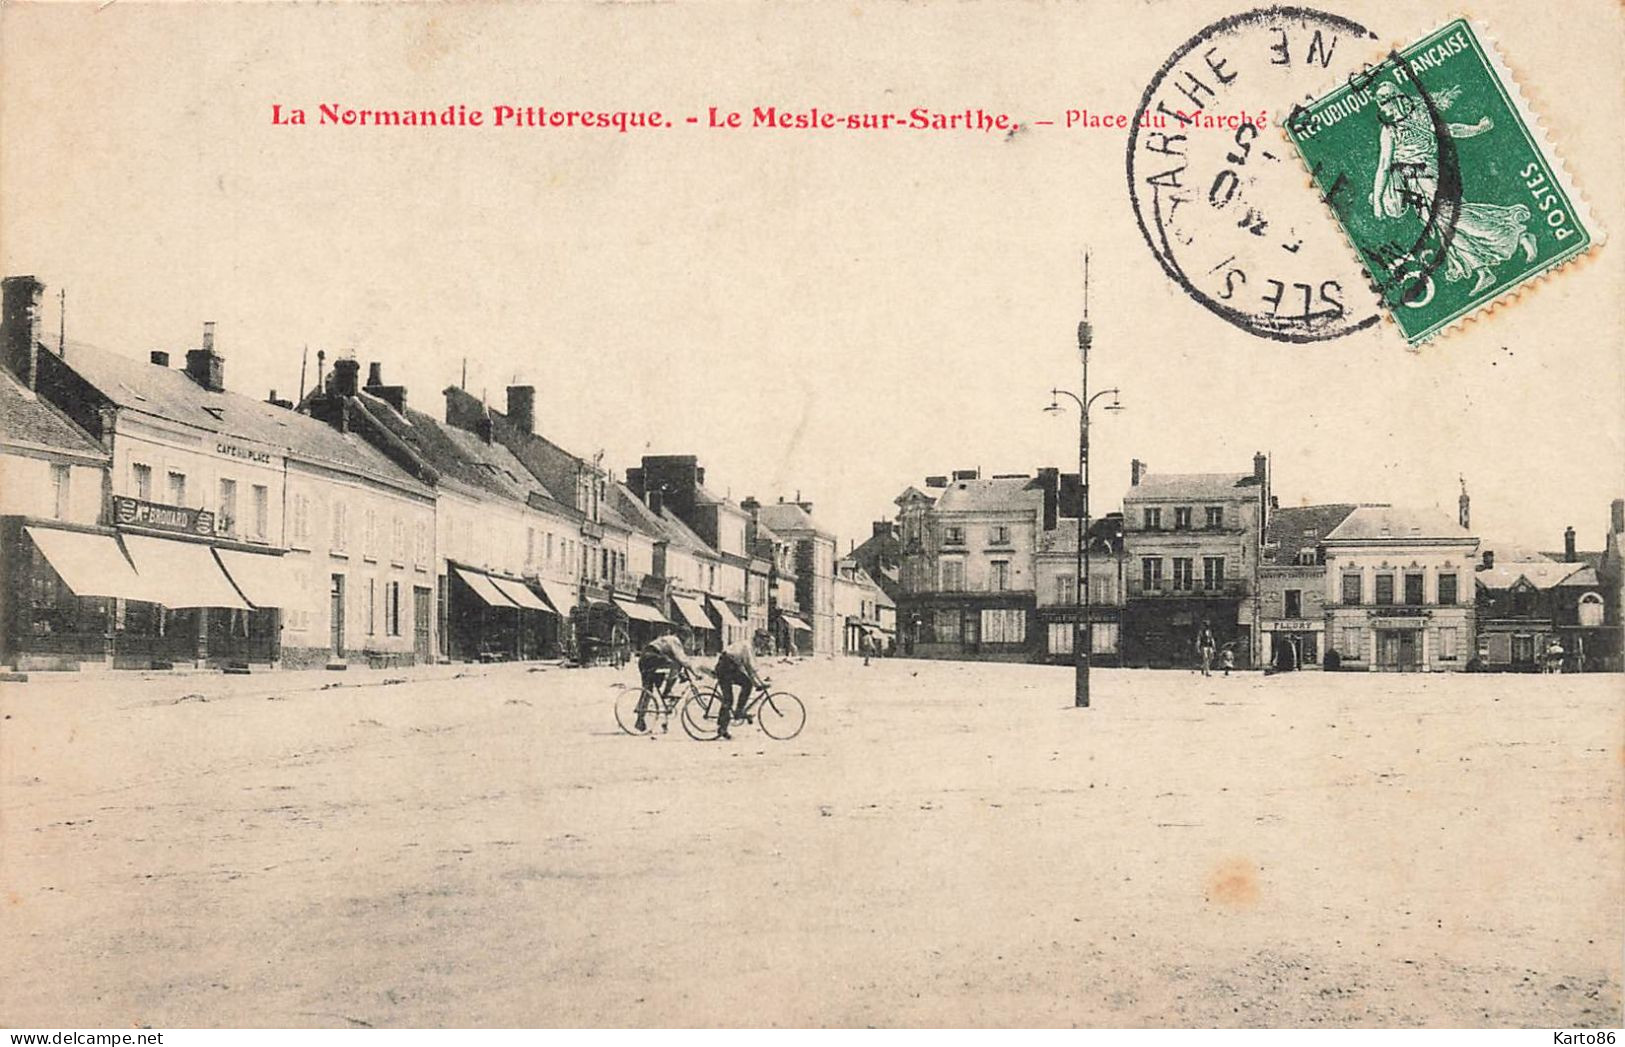 Le Mesle Sur Sarthe * 1909 * Place Du Marché * Café De La Place * Commerce Magasin Maison BROUARD * Villageois - Le Mêle-sur-Sarthe